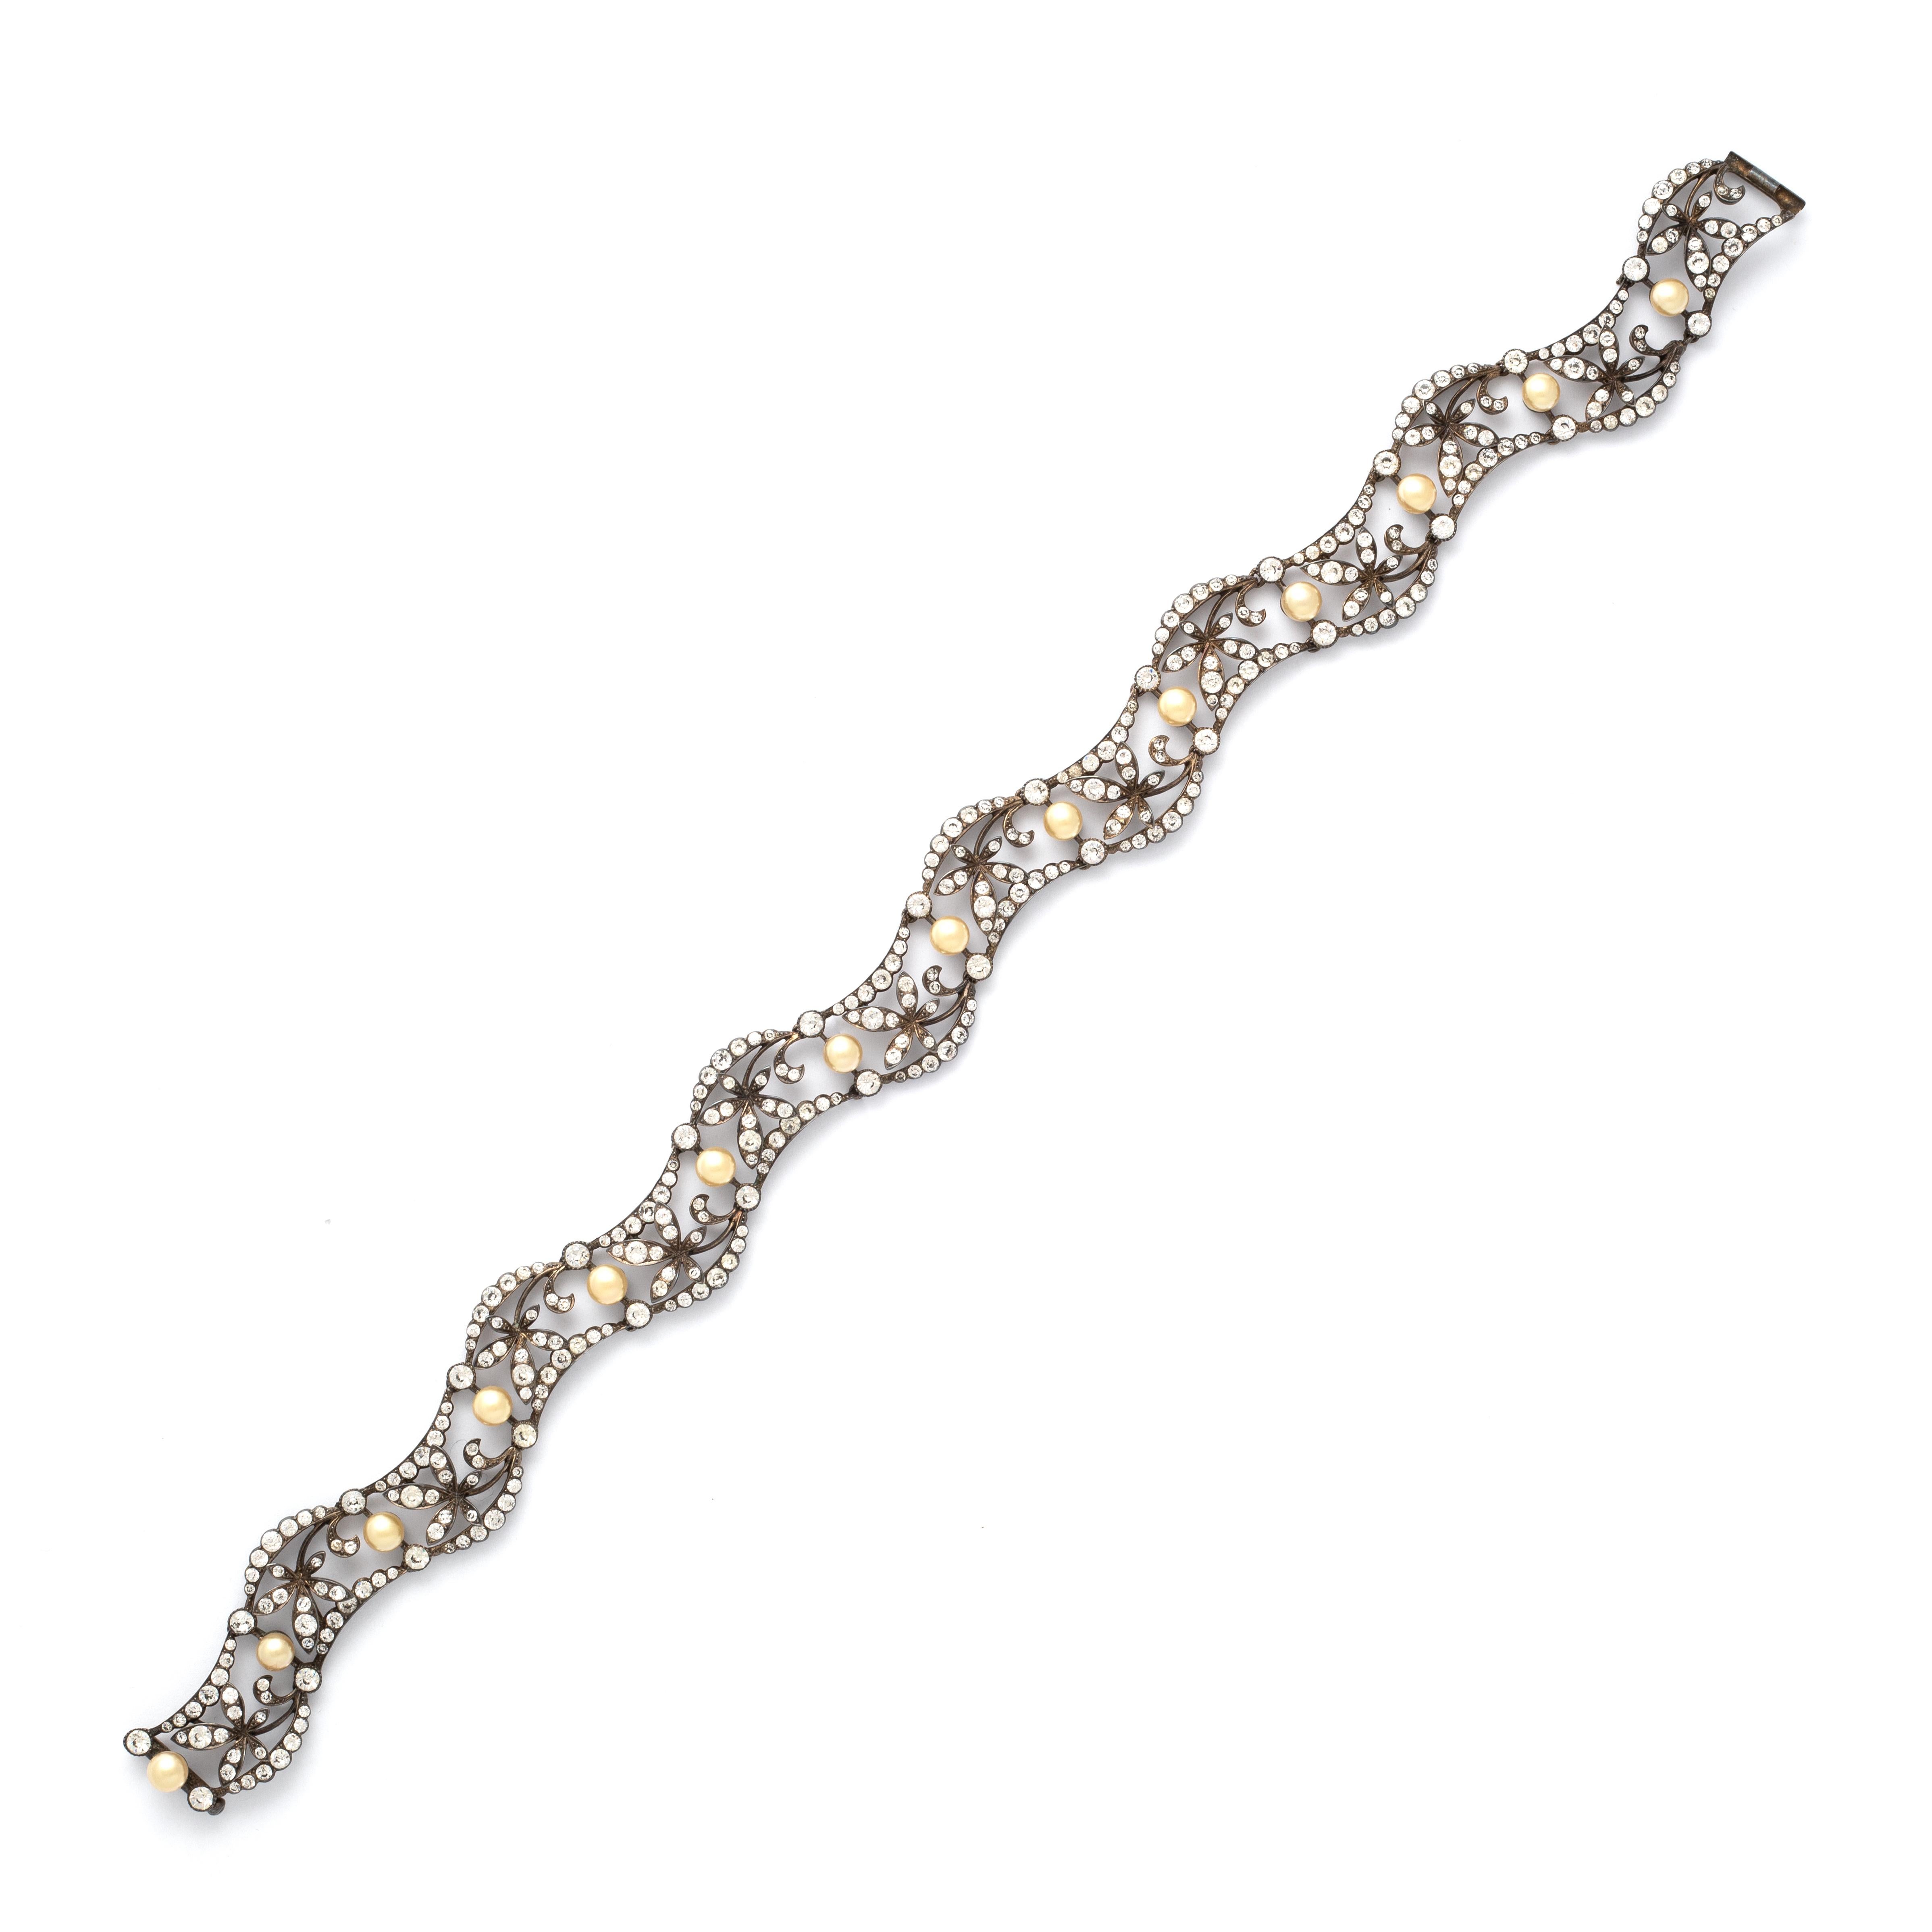 Paste Halsband. Falsche Perle und weiße Steine auf Silber.
Kann in ein Stirnband umgewandelt werden.
Bruttogewicht: 76,42 Gramm.